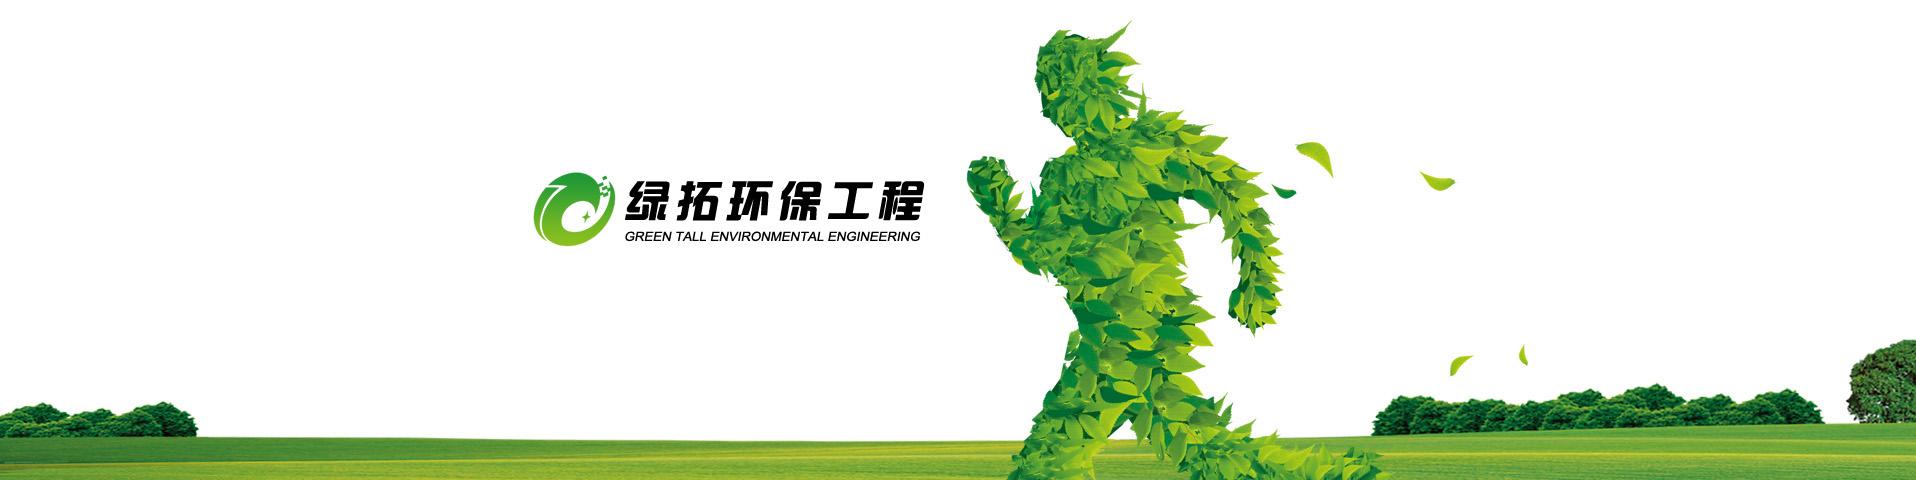 台州绿拓环保工程形象图